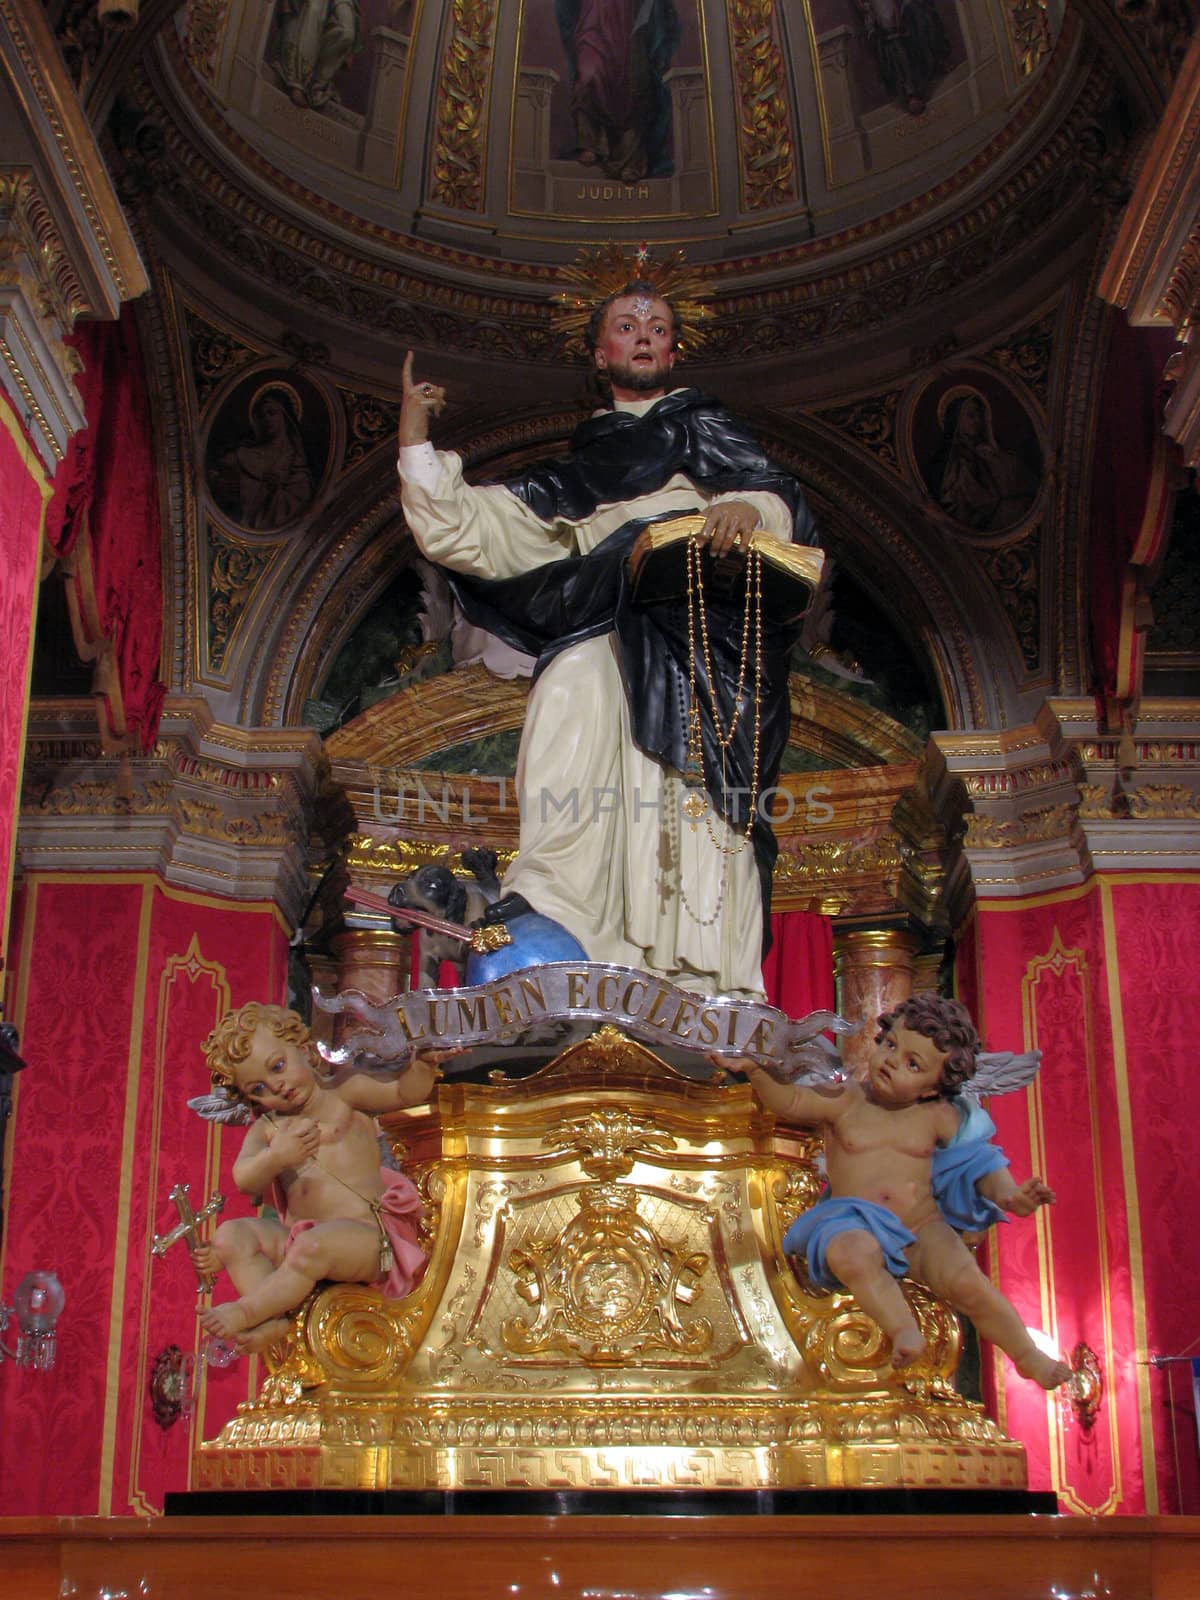 Saint Dominic de Guzman by fajjenzu